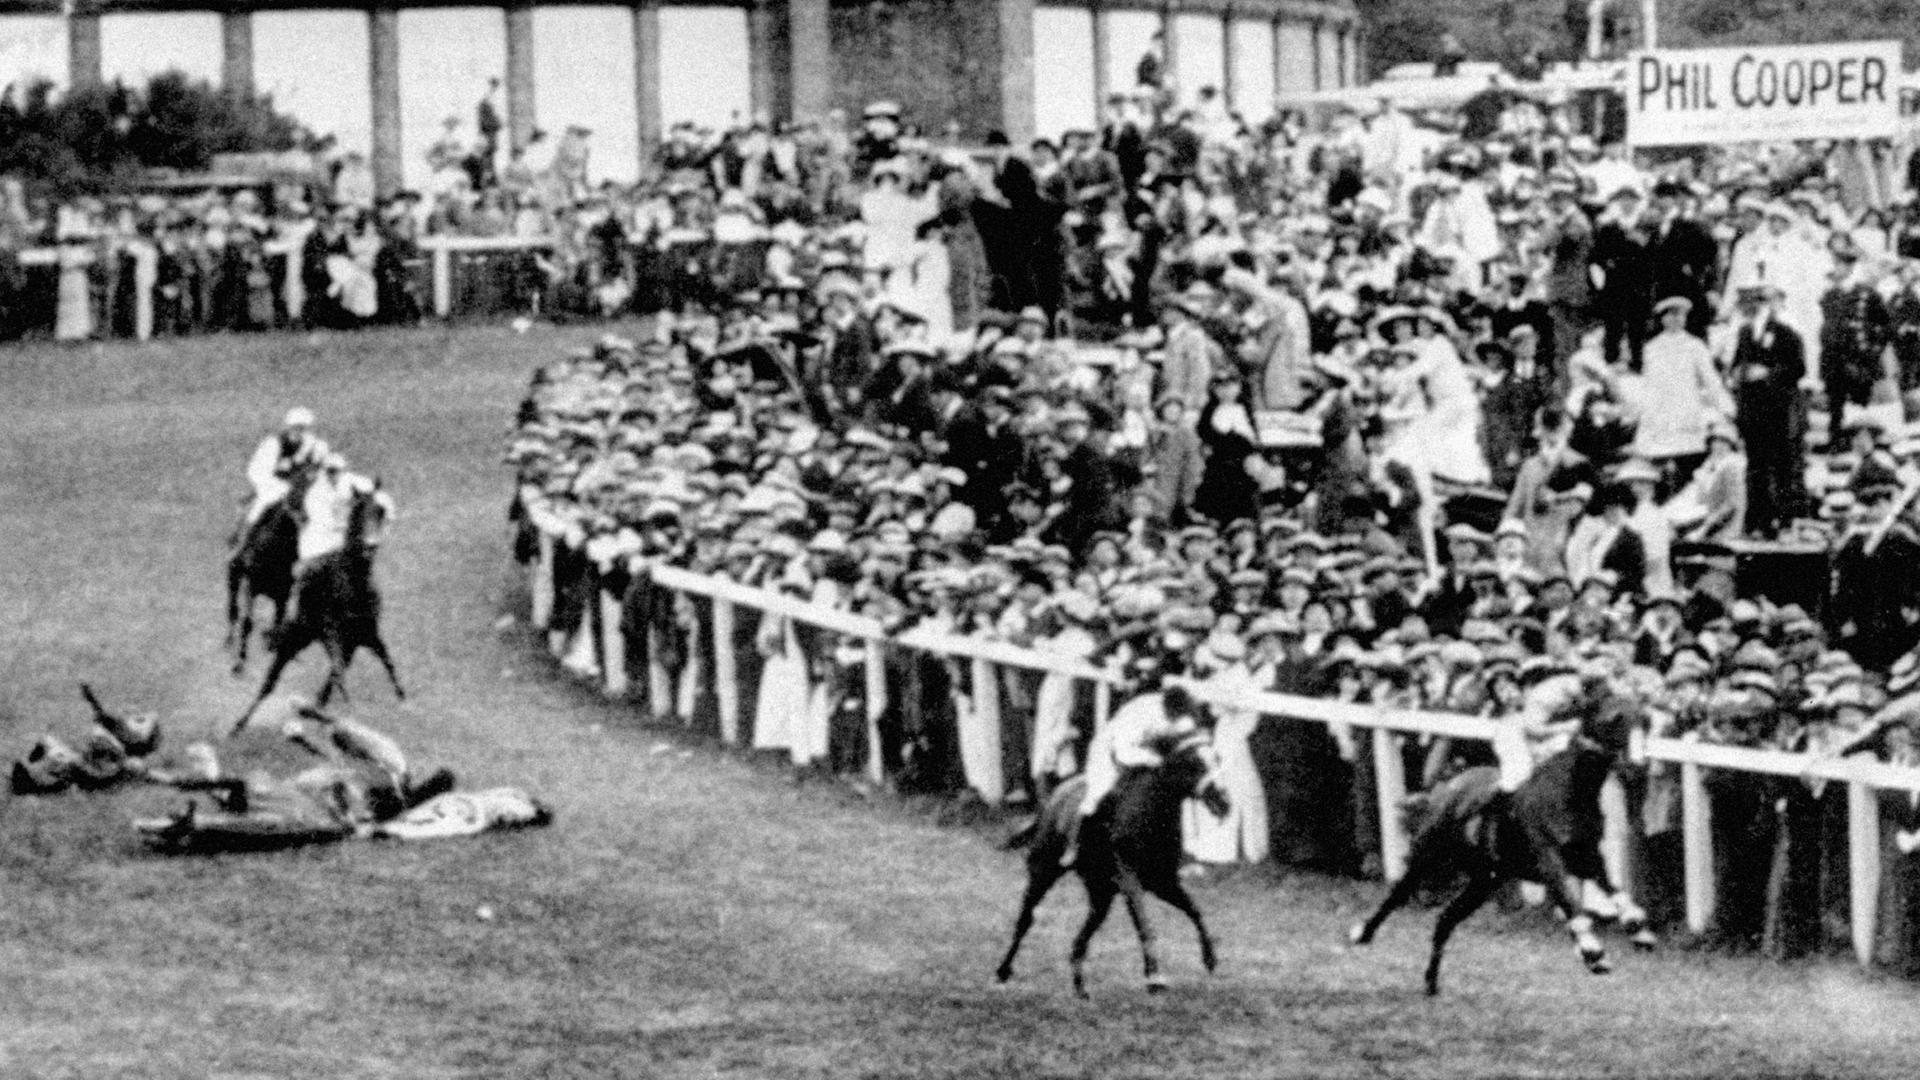 Historisches Foto vom Epsom Derby 1913, mit Pferden und Zuschauern sowie gestürzten Tieren und einem Mensch auf dem Boden der Rennbahn